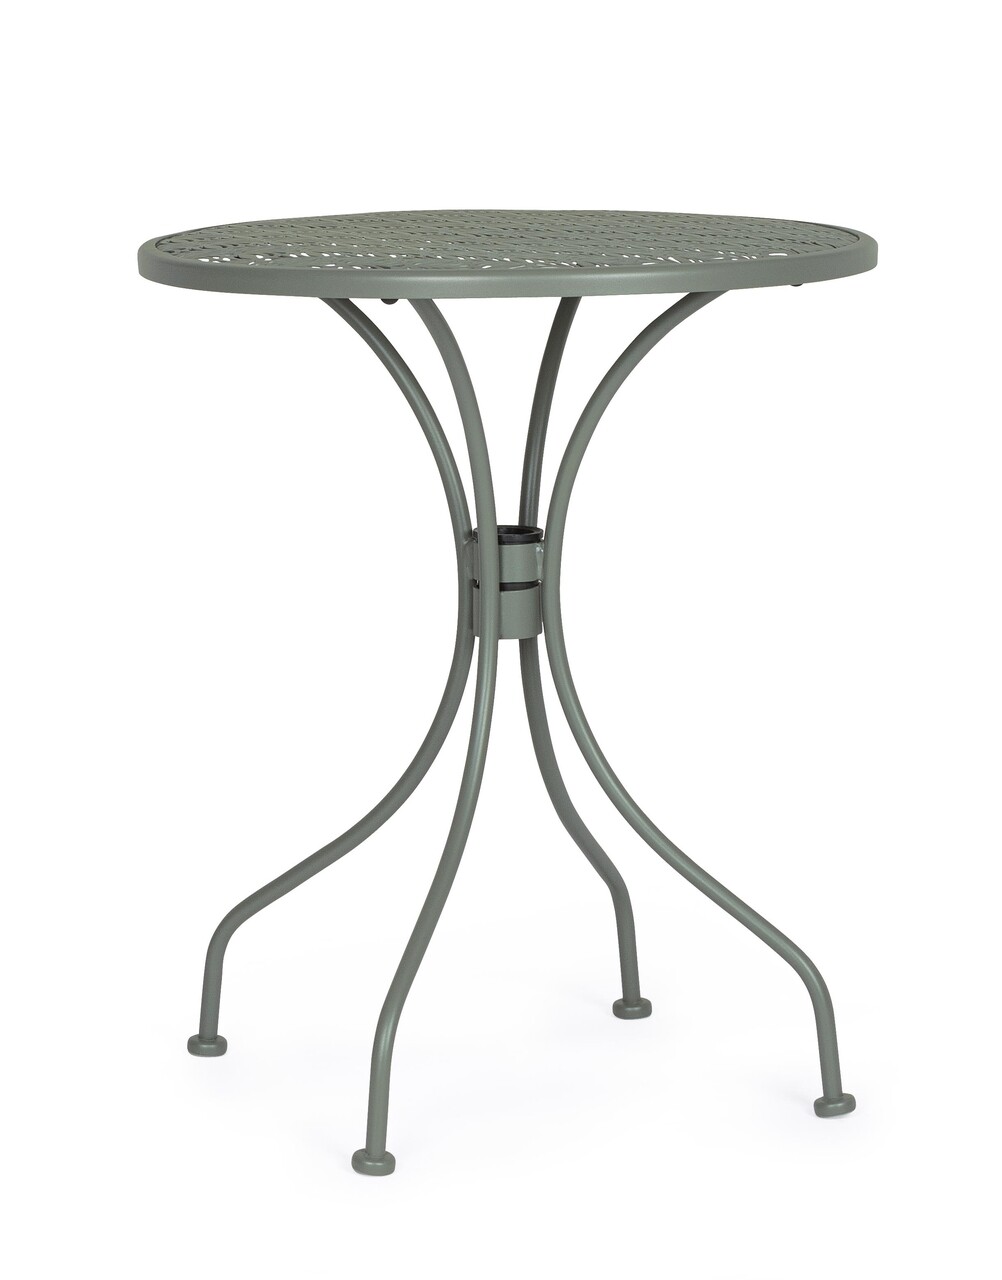 Lizette Kerti asztal, Bizzotto, Ø60 x 71 cm, acél, matt felület, sötét olívaszín